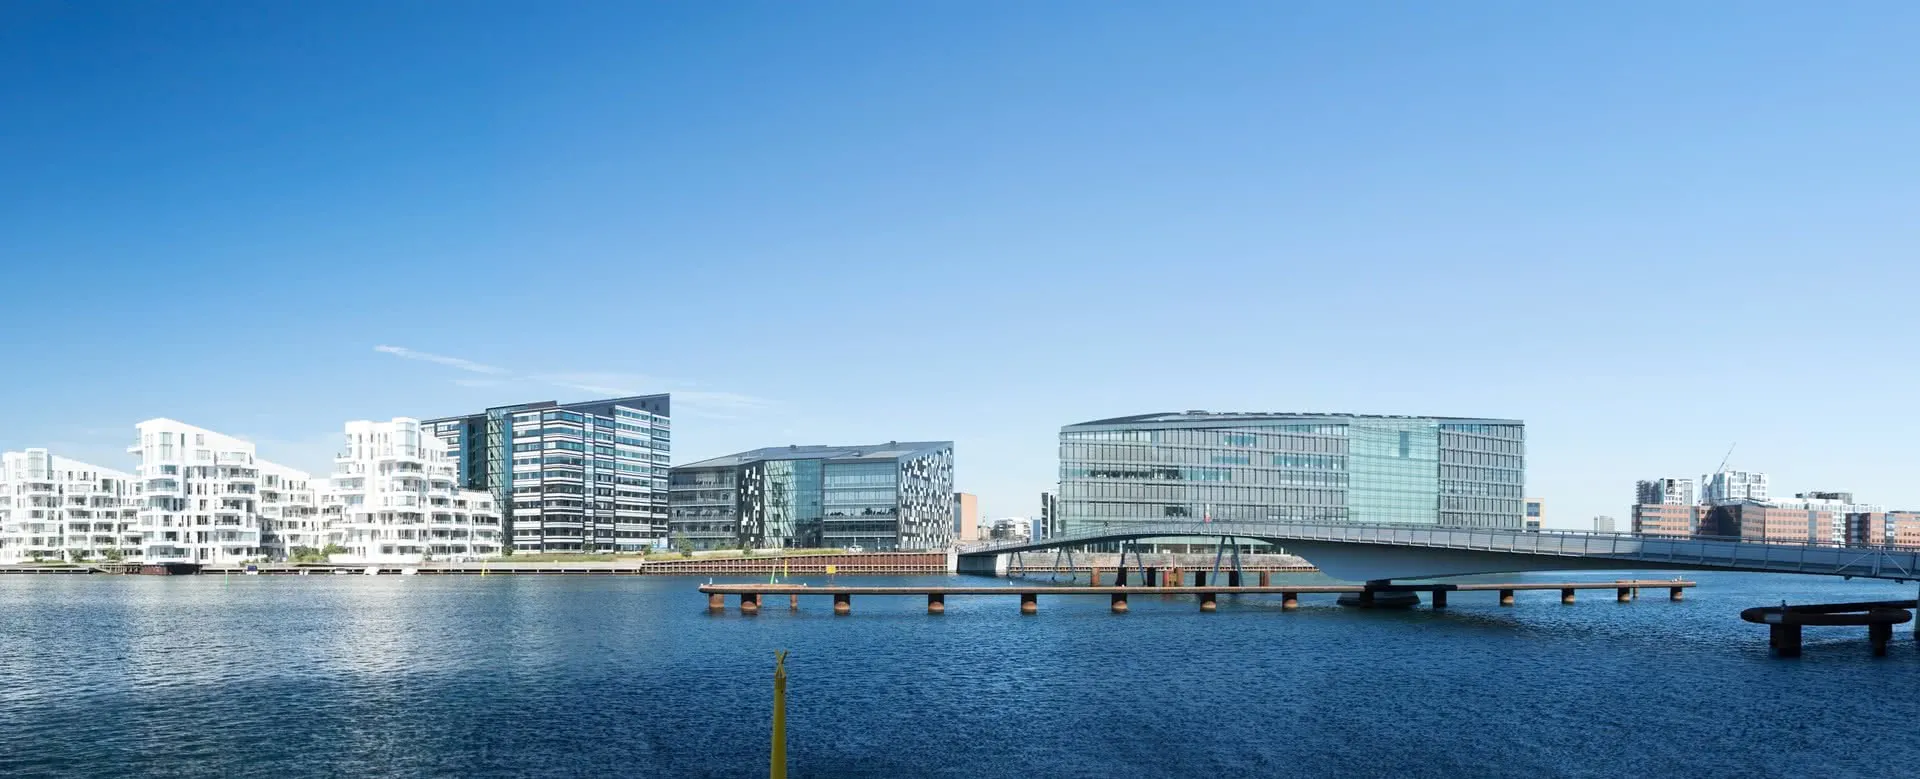 Kopenhagen panorama image